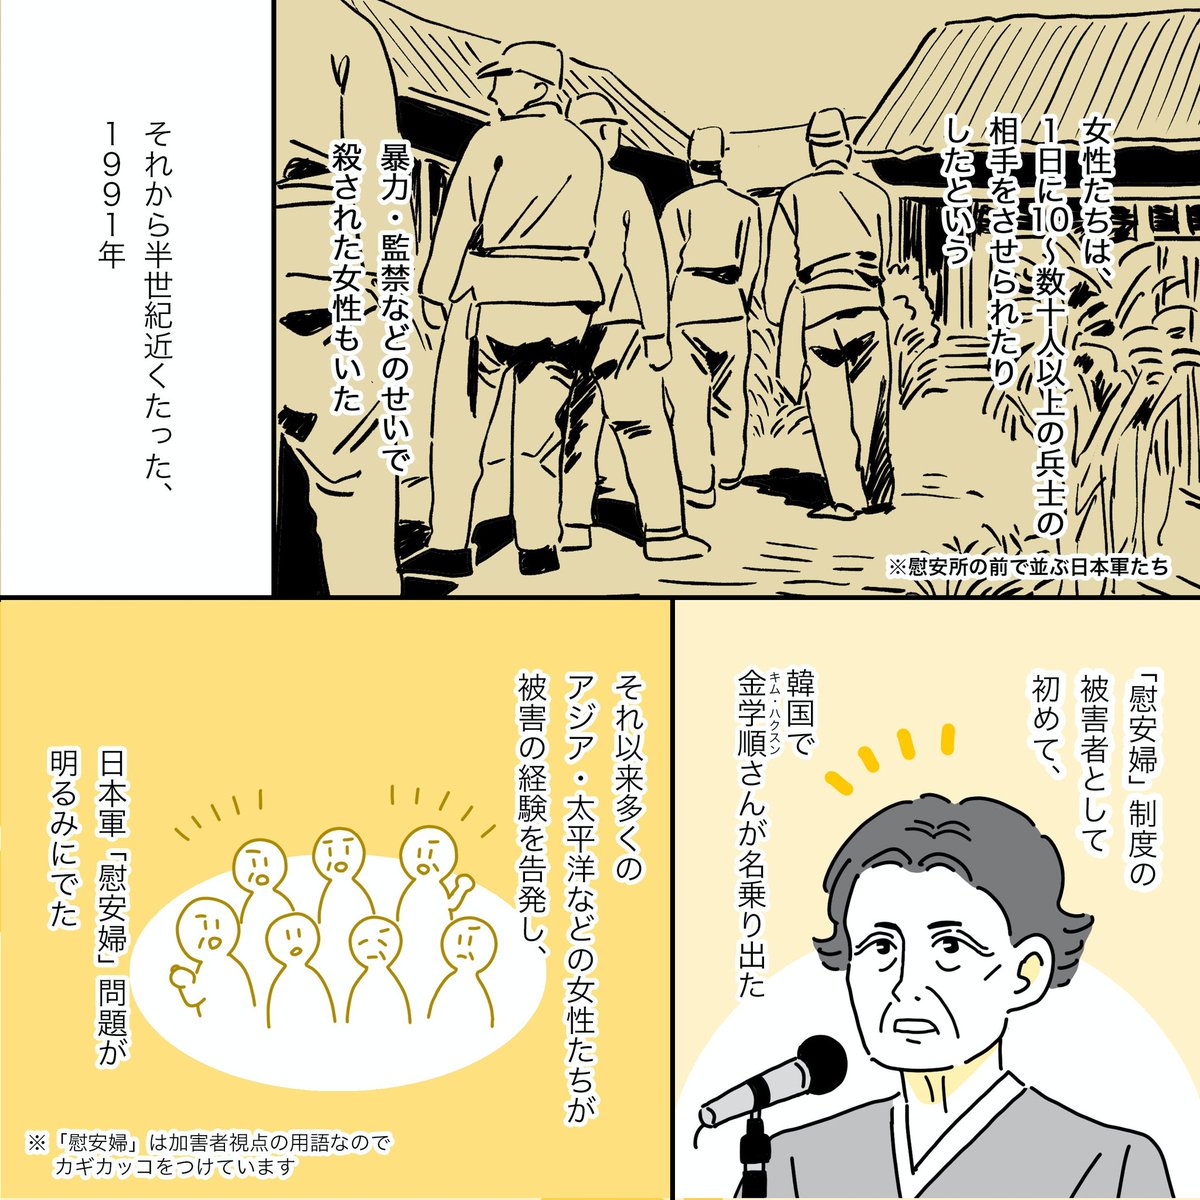 #慰安婦 @FightfJustice
集めたお金の使い道を知りたいです。真の歴史修正主義は誰?

【日本軍慰安婦についてのデマが溢れています。歴史修正主義によって日本の責任を回避しようとするものです。被害を受けた女性達や運動に関わる団体を誹謗中傷するものまであります】
https://t.co/GBE3fAdh7t 